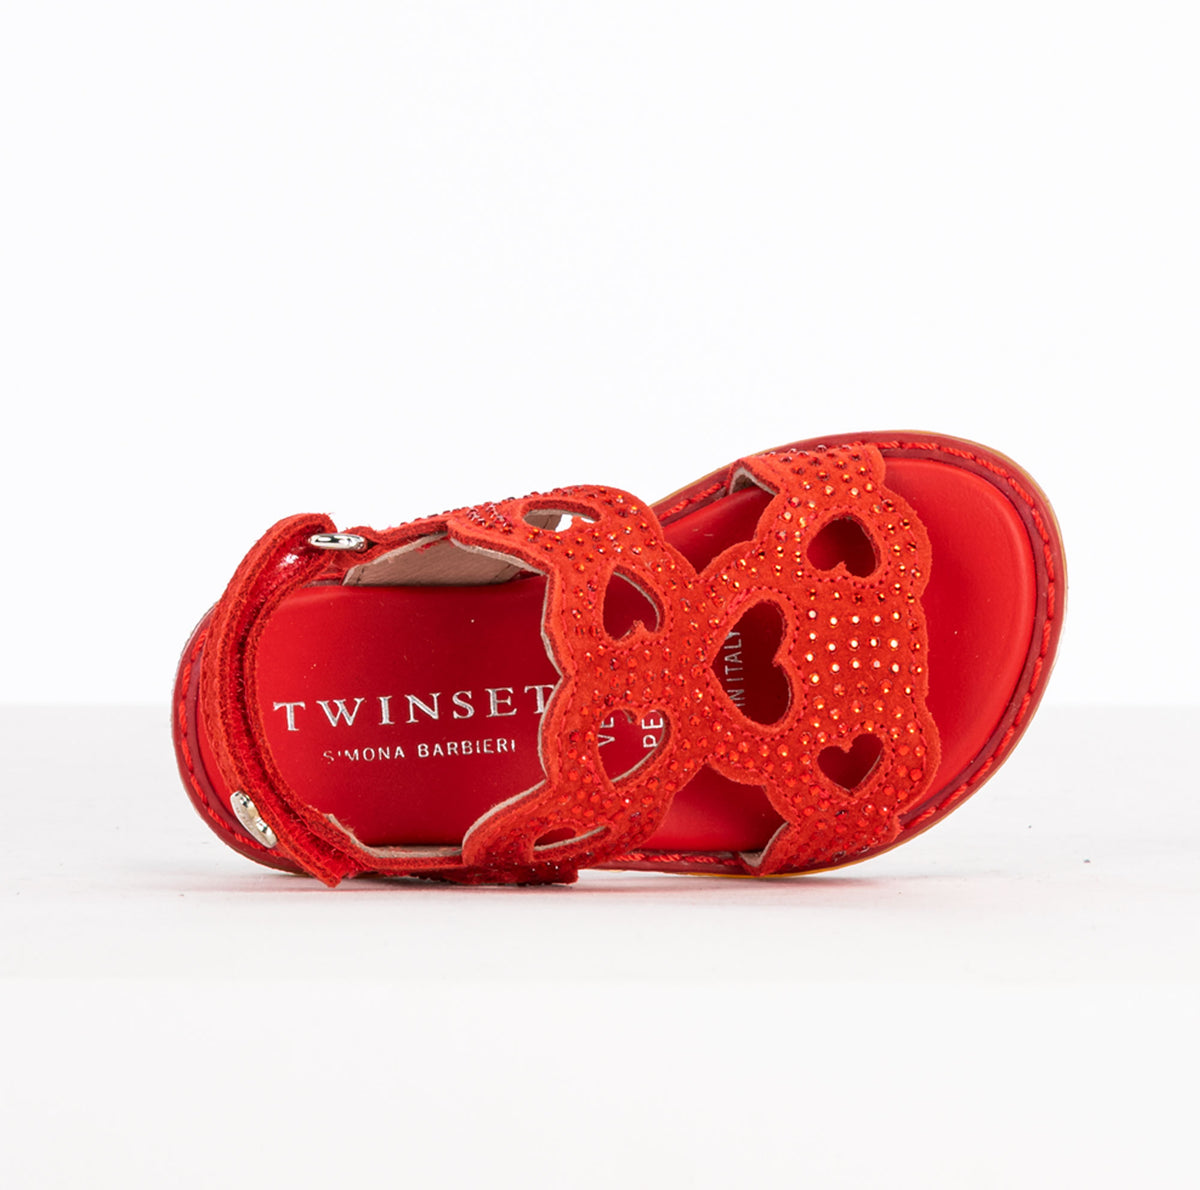 twin set | sandali da bambina